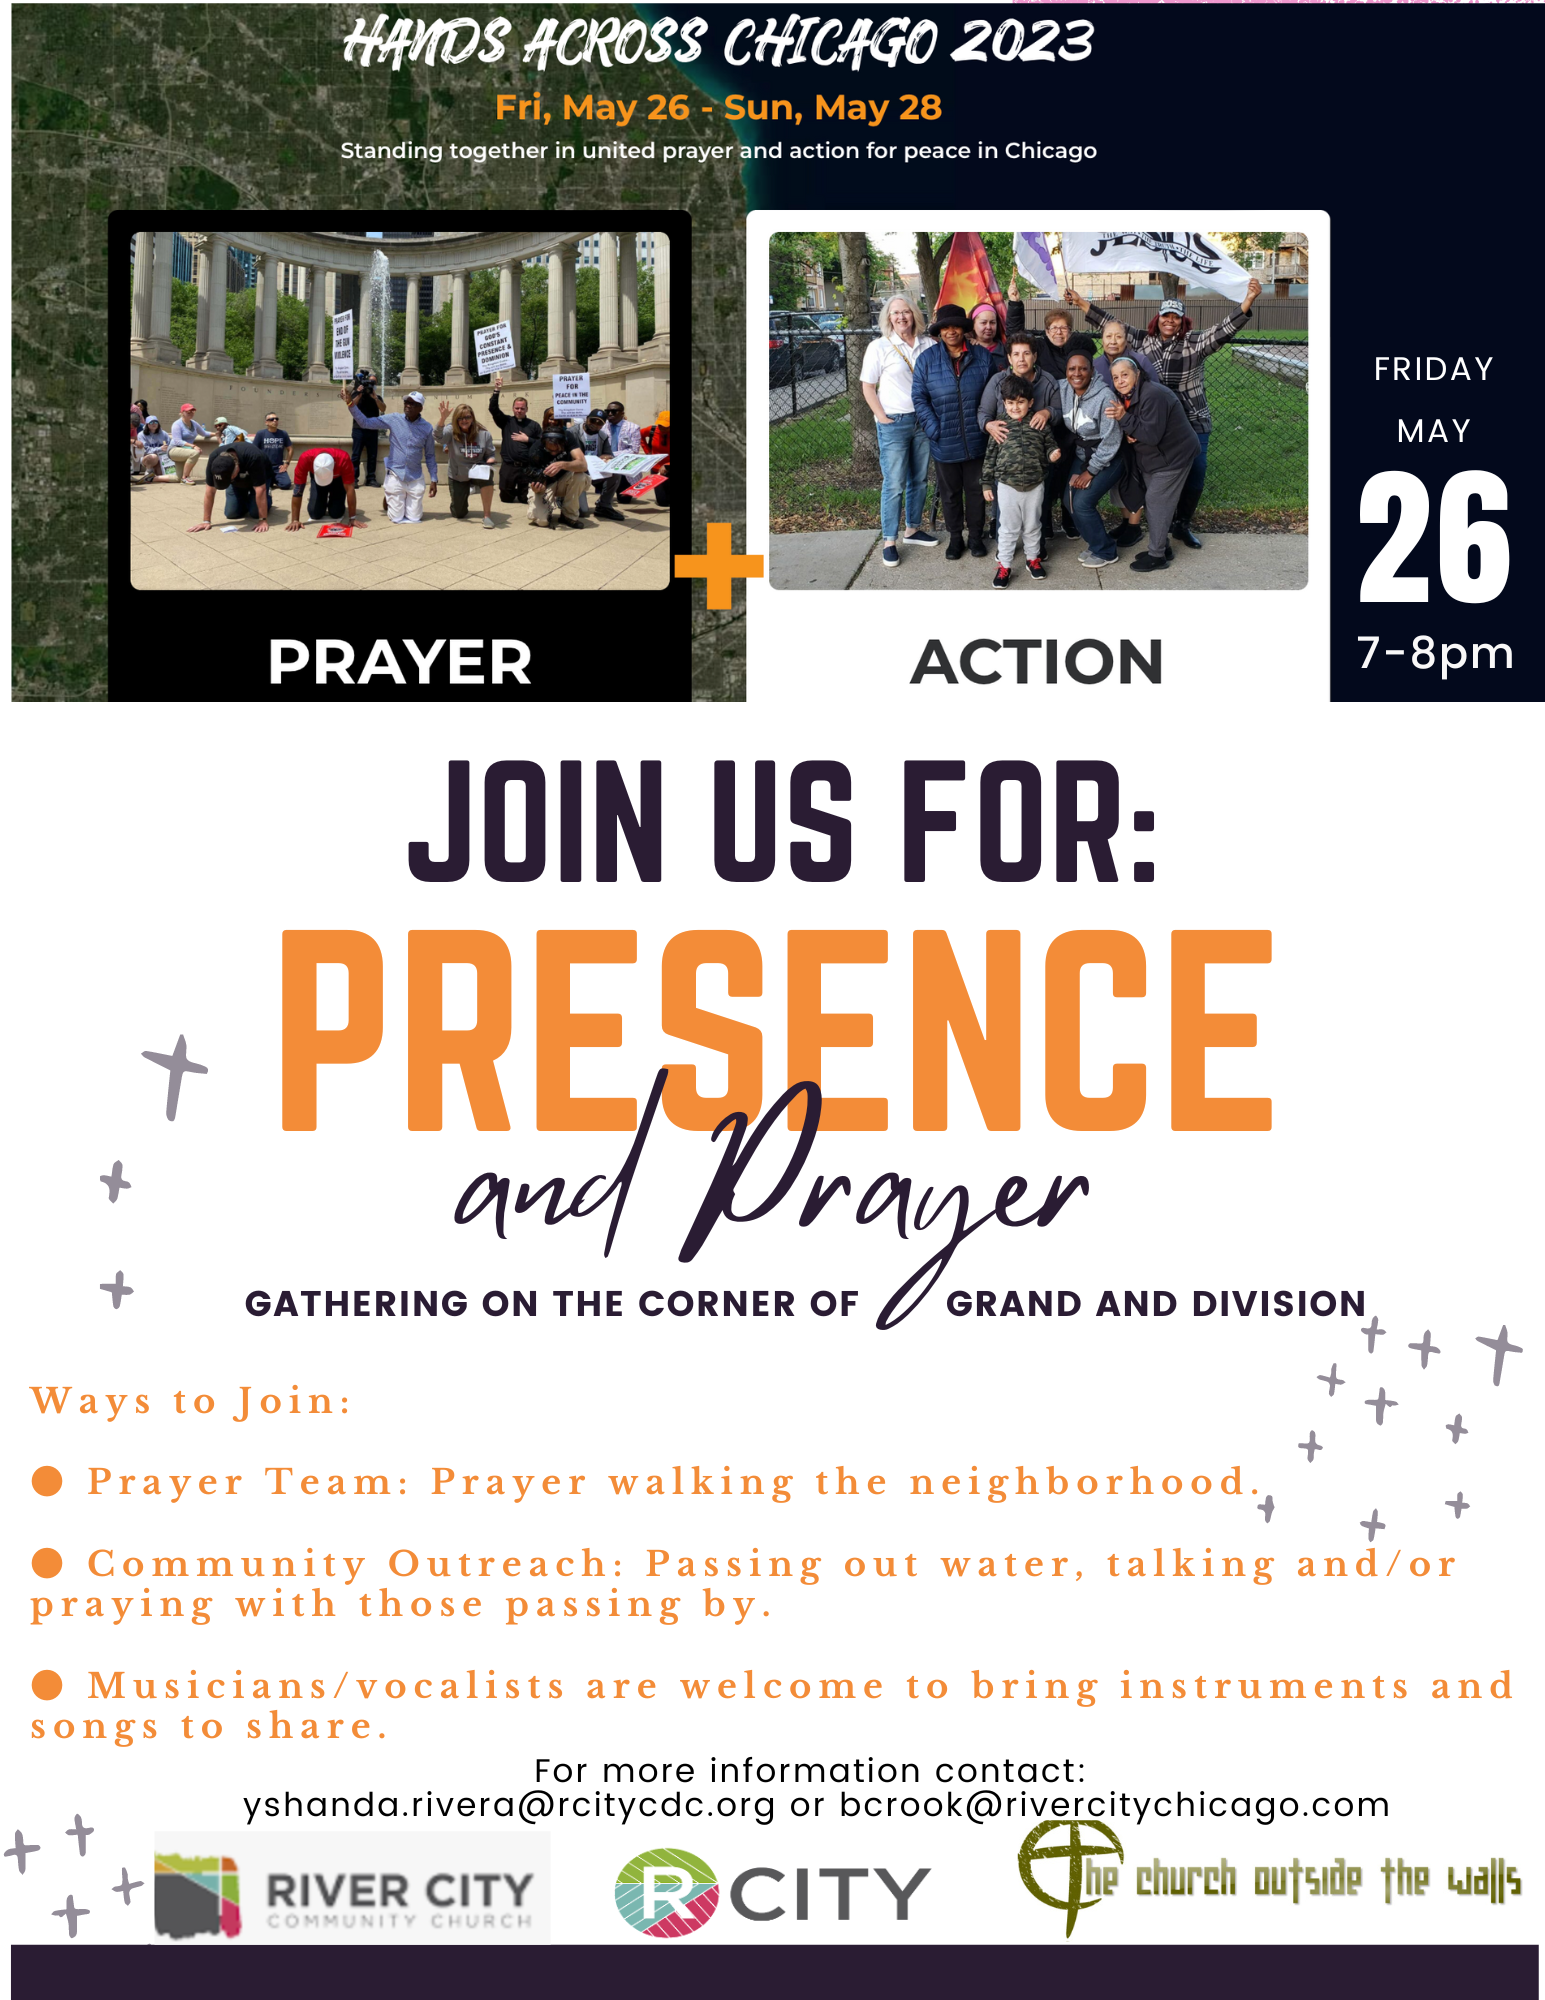 Presence and Prayer at Grand & Division